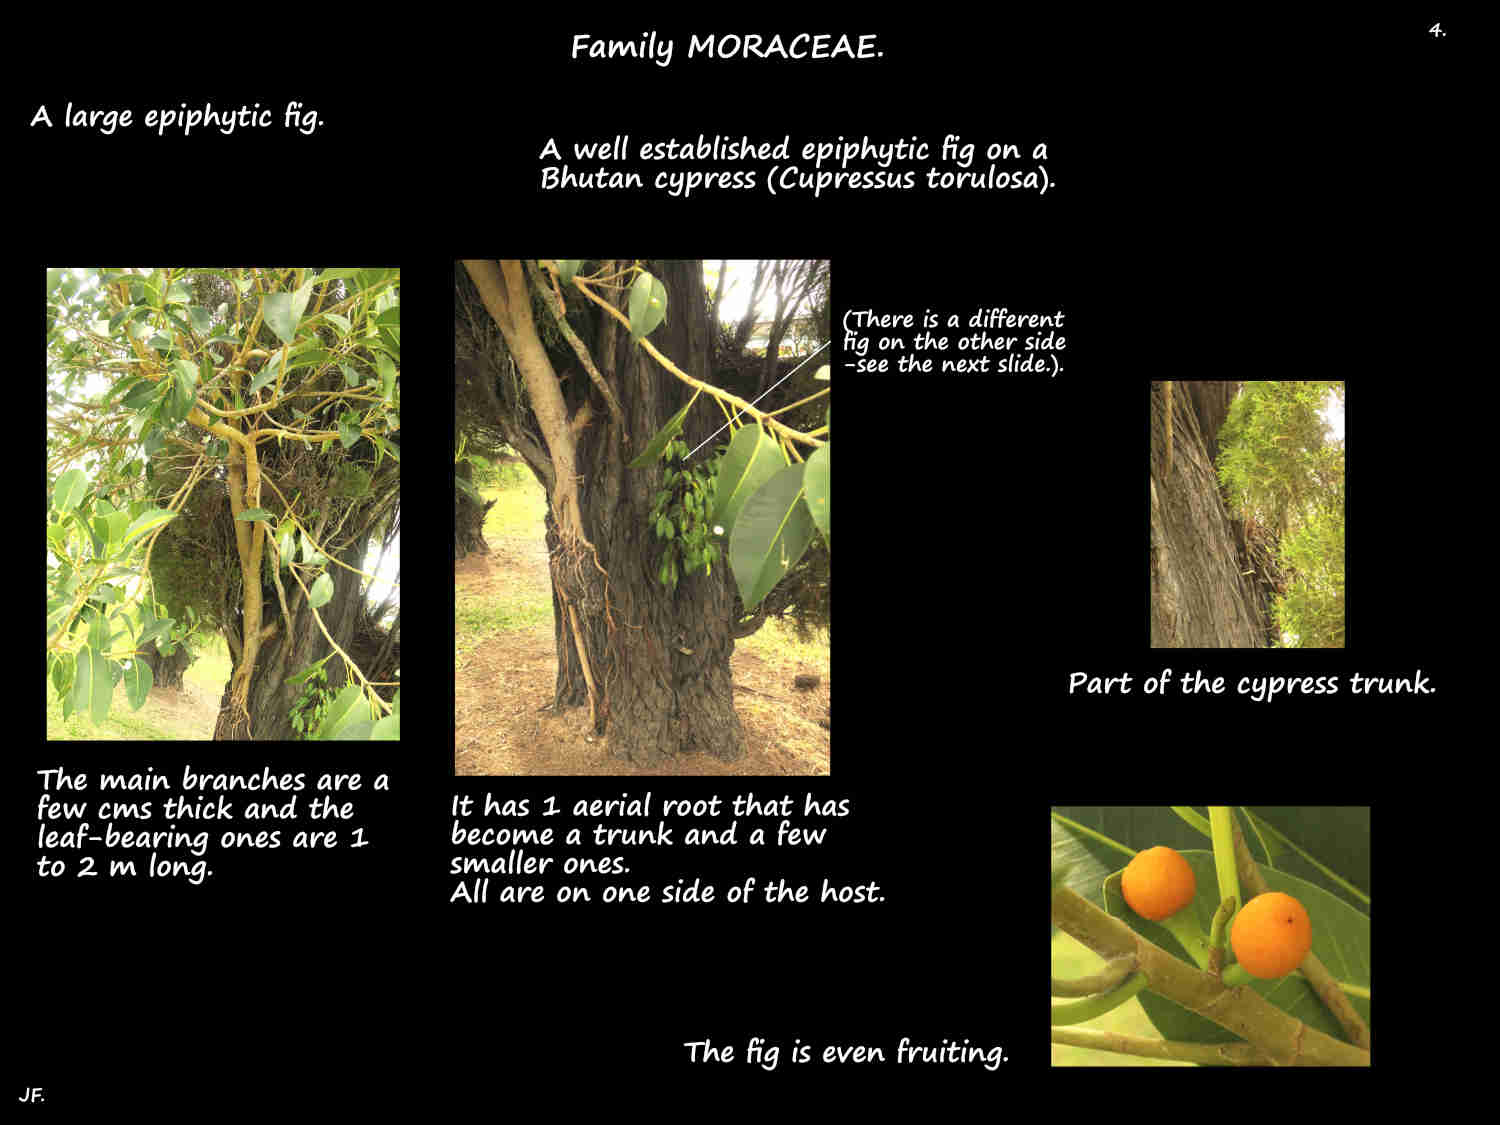 4 A large epiphytic fig fruiting